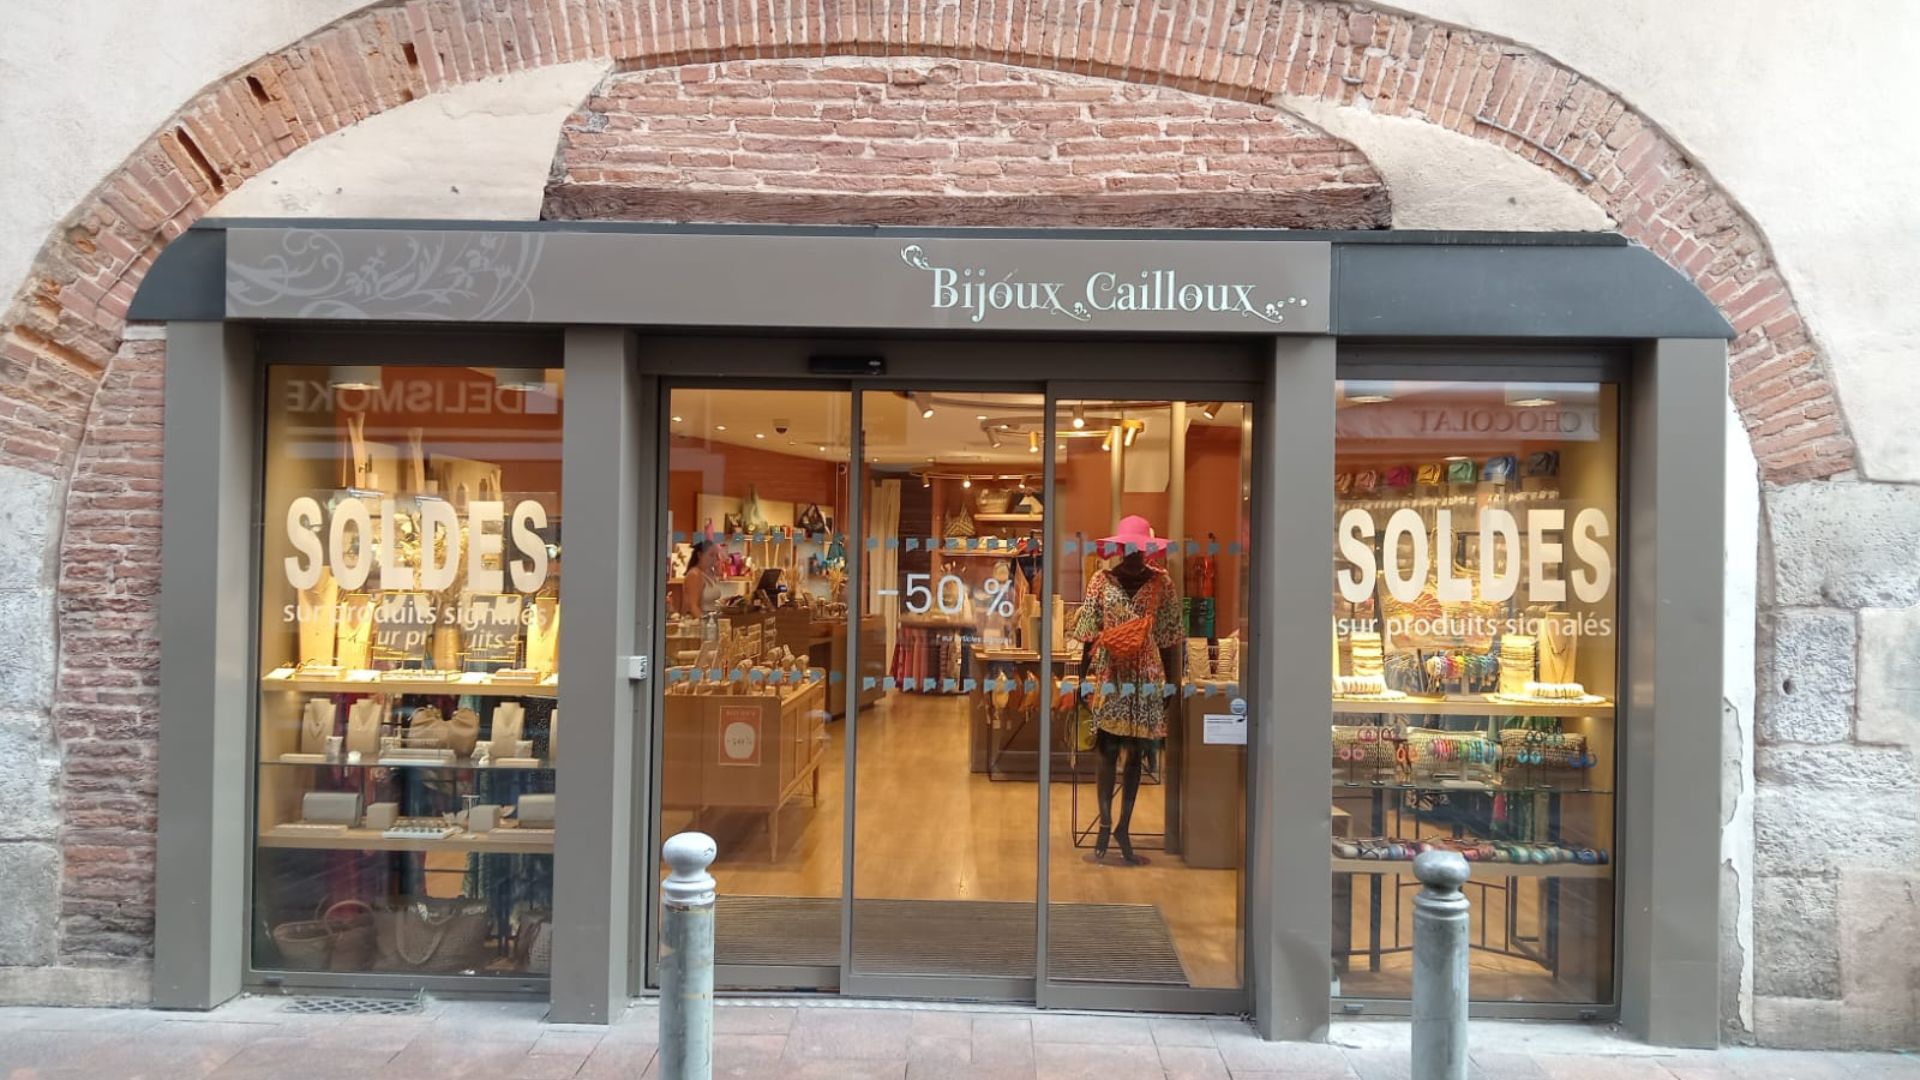 Découvrez la magie de Bijoux Cailloux à Toulouse !